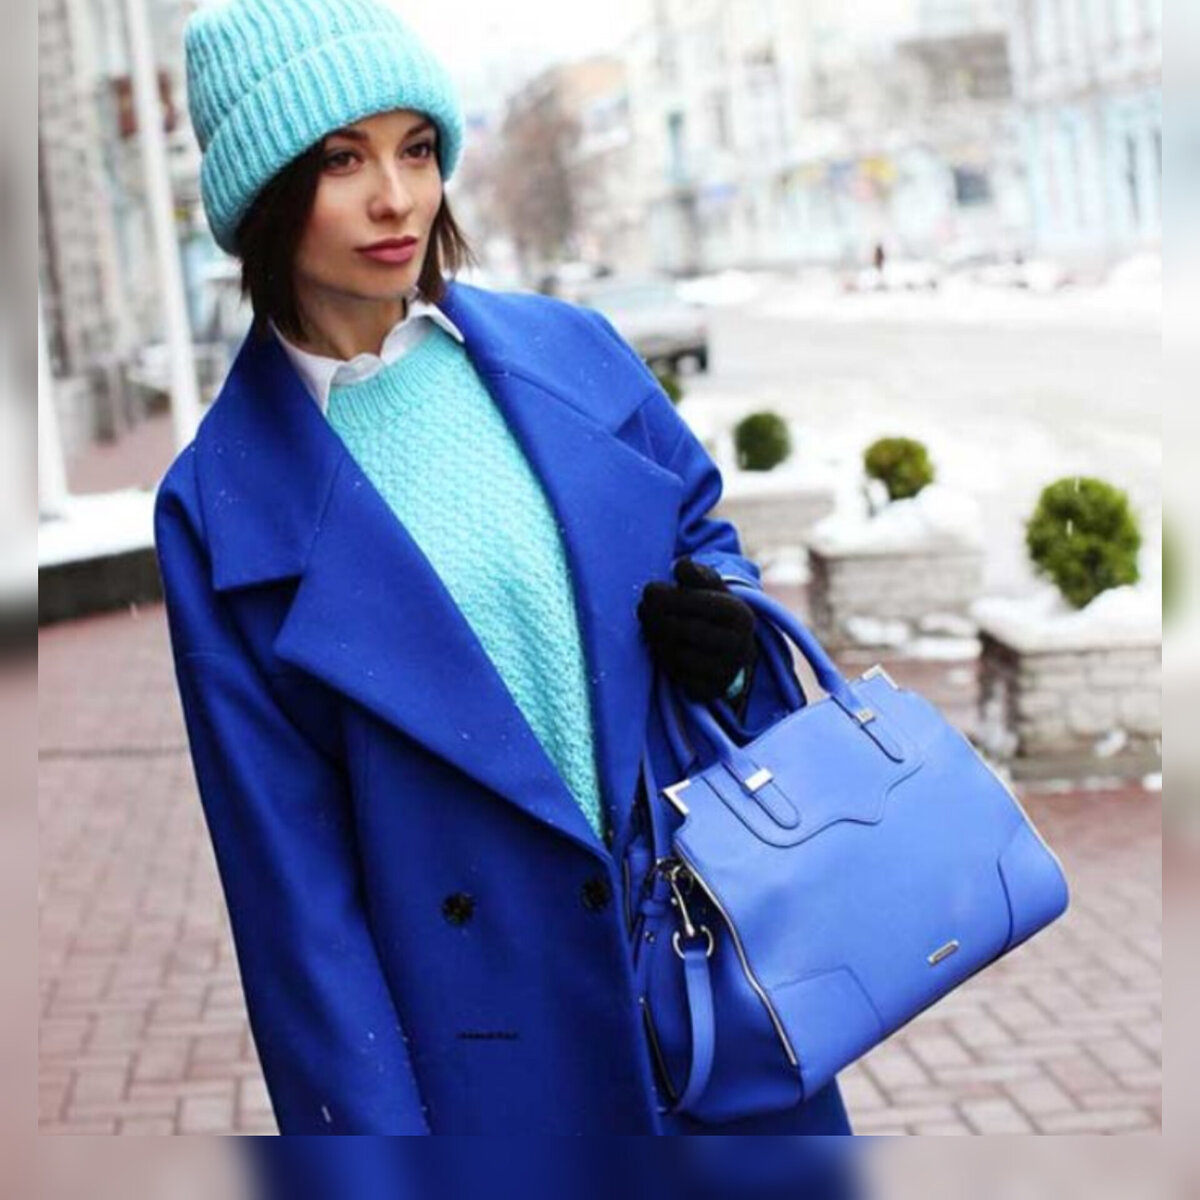 бордовый цвет шапки под синее пальто фото